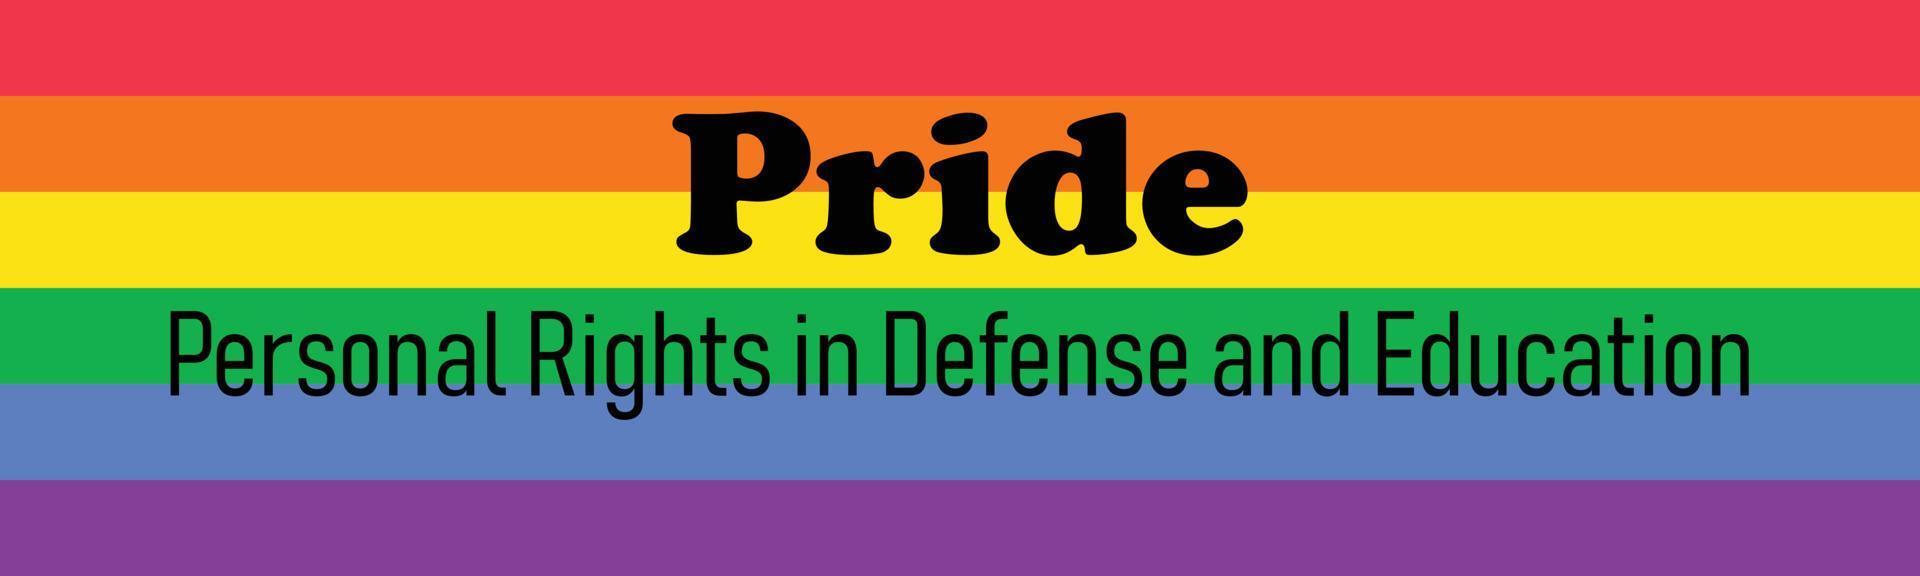 siglas de orgullo - derechos personales en defensa y educación. organización política homosexual. colorida bandera del arco iris. ilustración vectorial vector